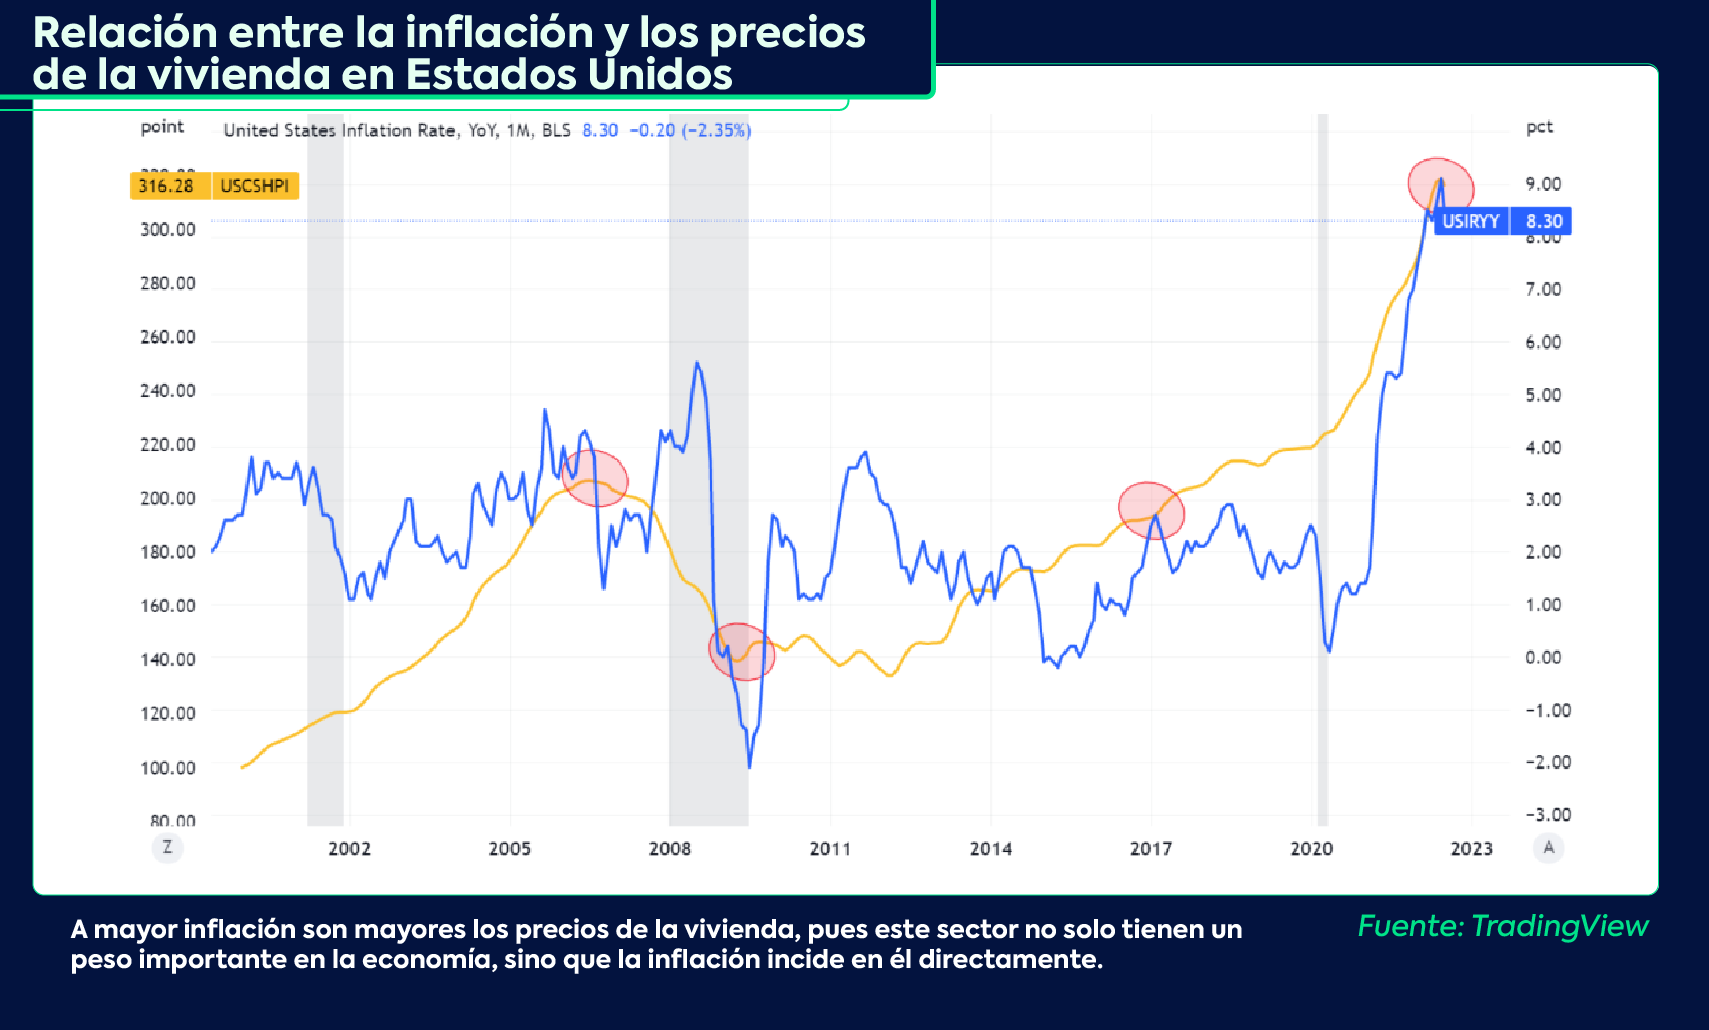 Relación entre los precios de la vivienda y la inflación en Estados Unidos